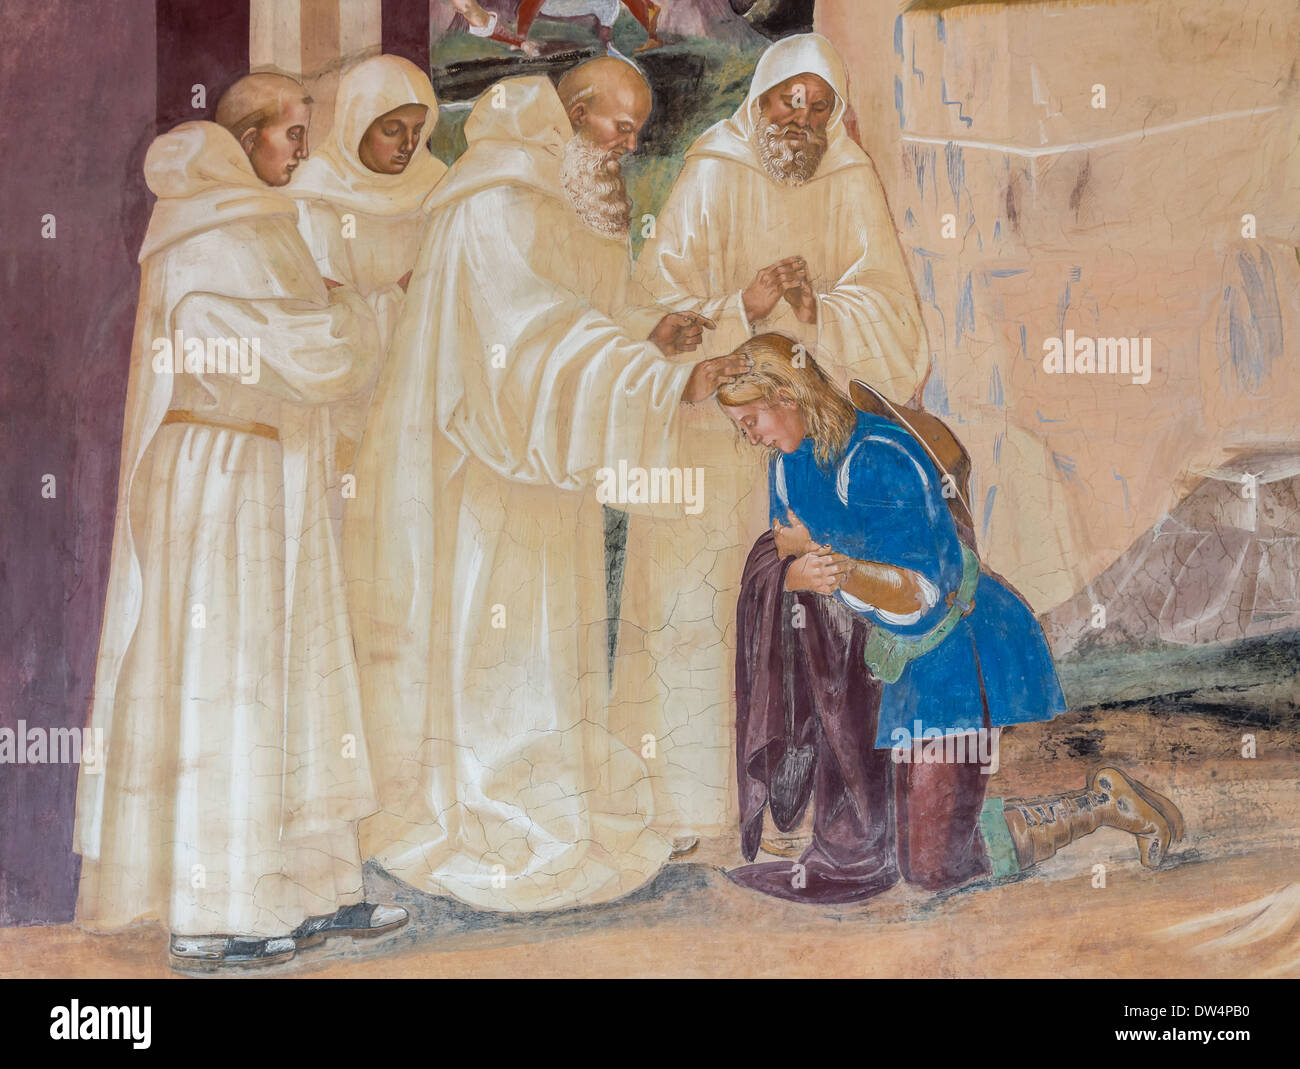 Fresque représentant la vie de saint Benoît, de Signorelli, cloître de l'abbaye Abbazia di Monte, Toscane, Italie Banque D'Images